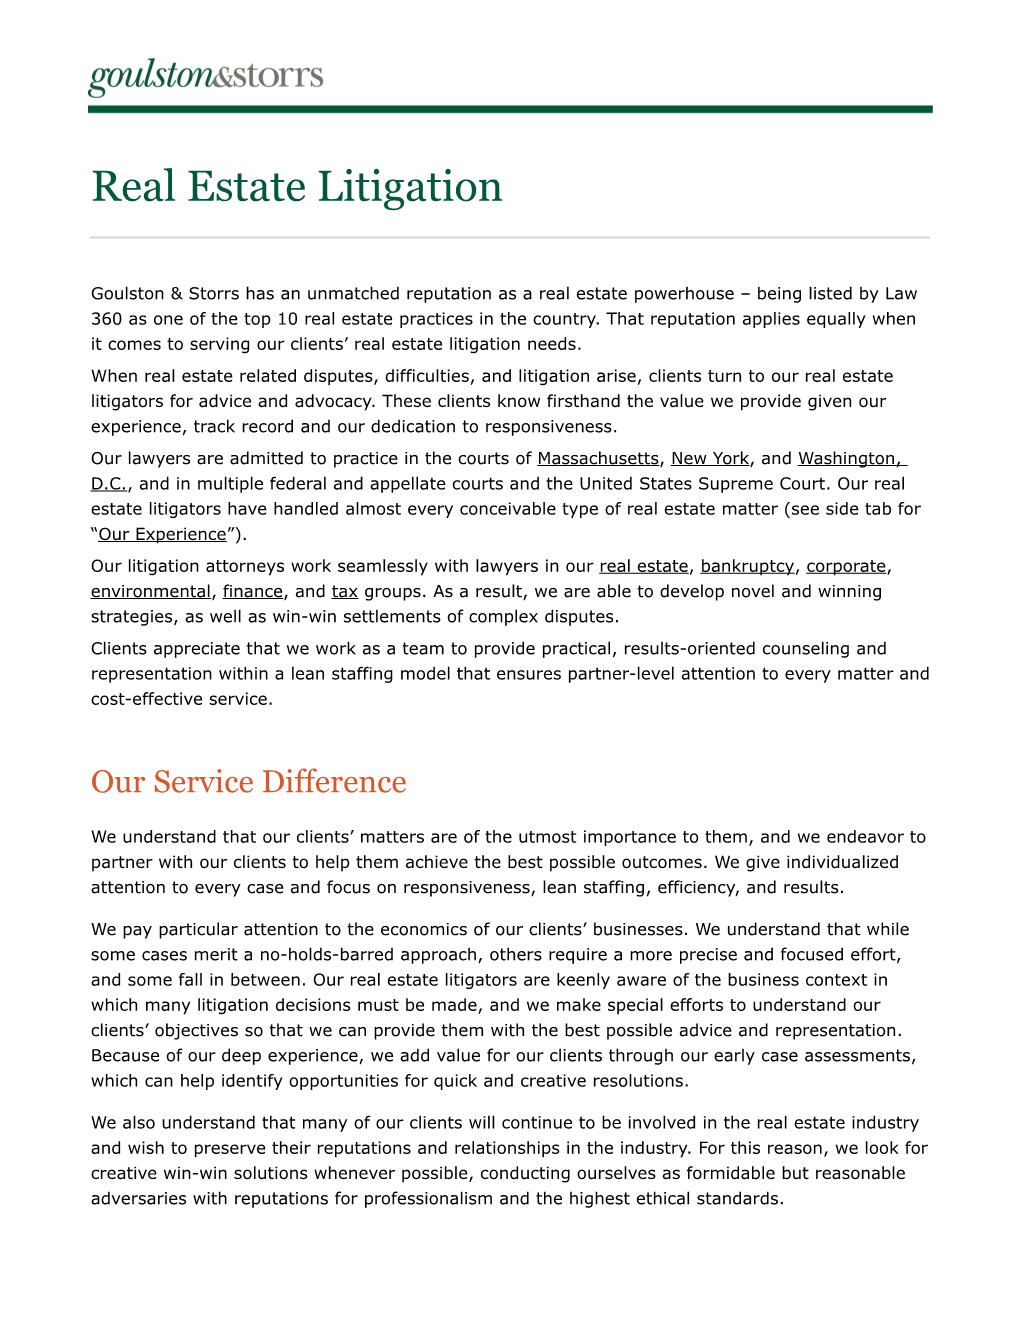 Real-Estate-Litigation.Pdf